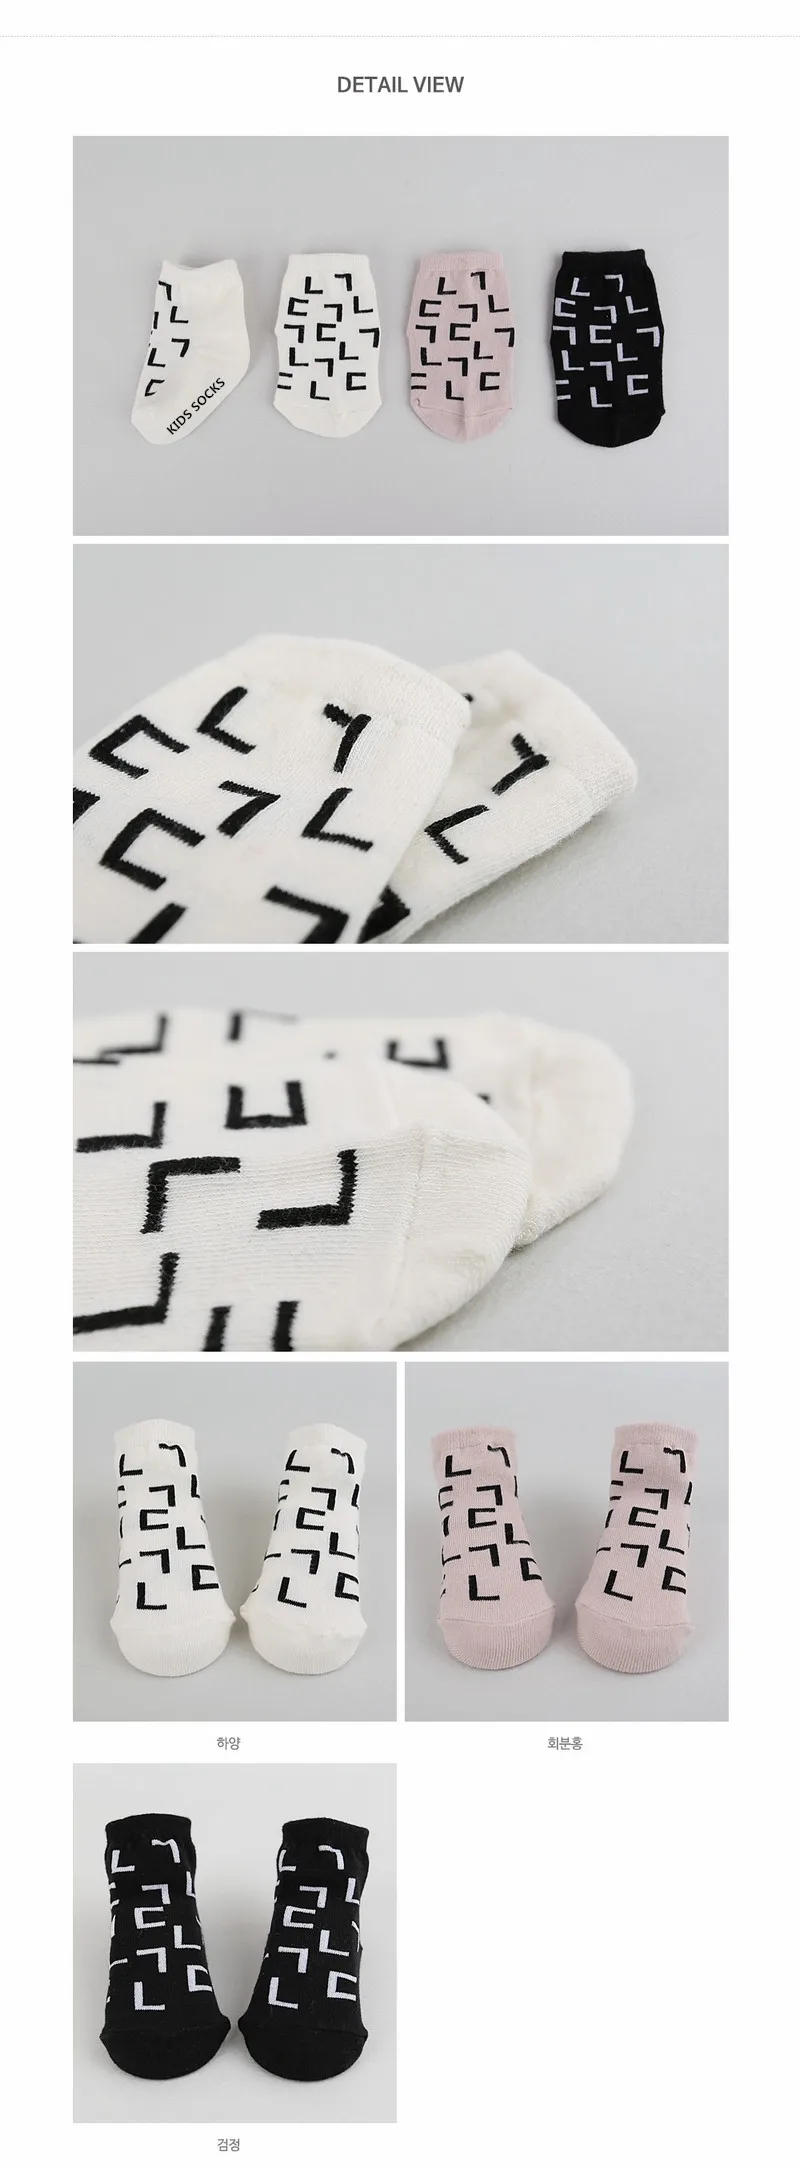 Носки для малышей с конструкцией хлопковые нескользящие носки для новорожденных Meias/милые детские носки для маленьких мальчиков и девочек белые забавные носки для детей от 0 до 4 лет